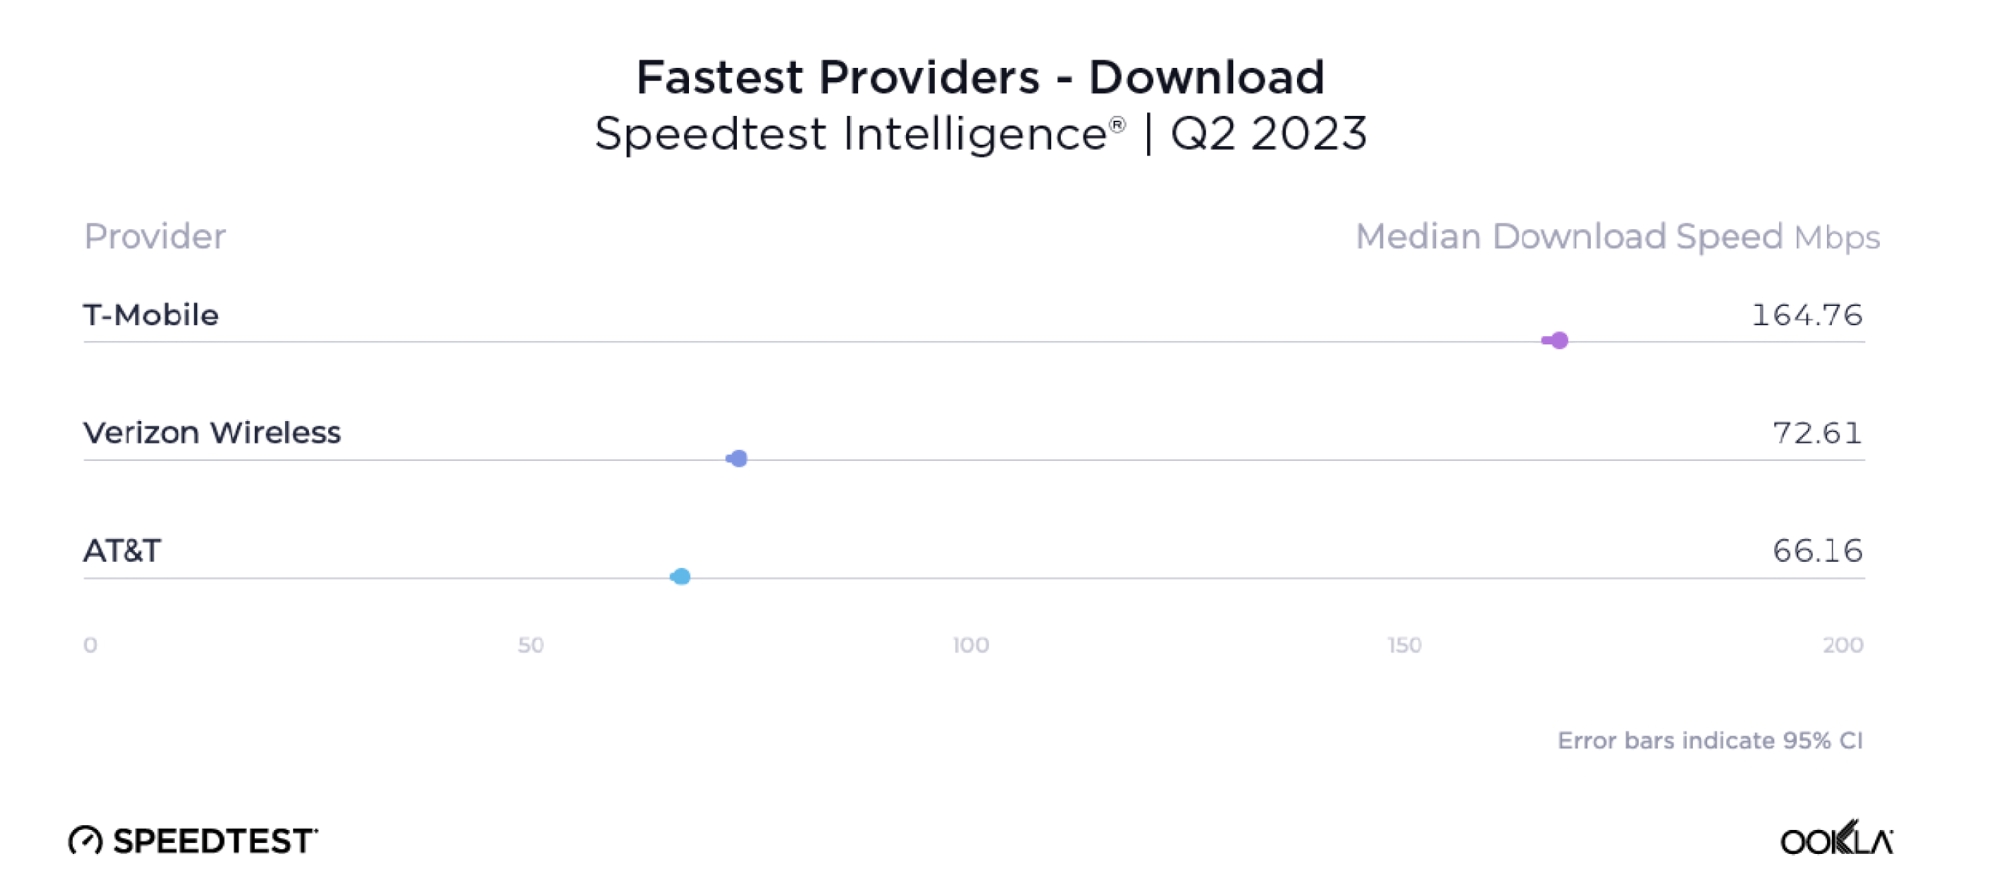 Tabela mostrando provedores móveis mais rápidos do relatório de julho de 2023 da Ookla.